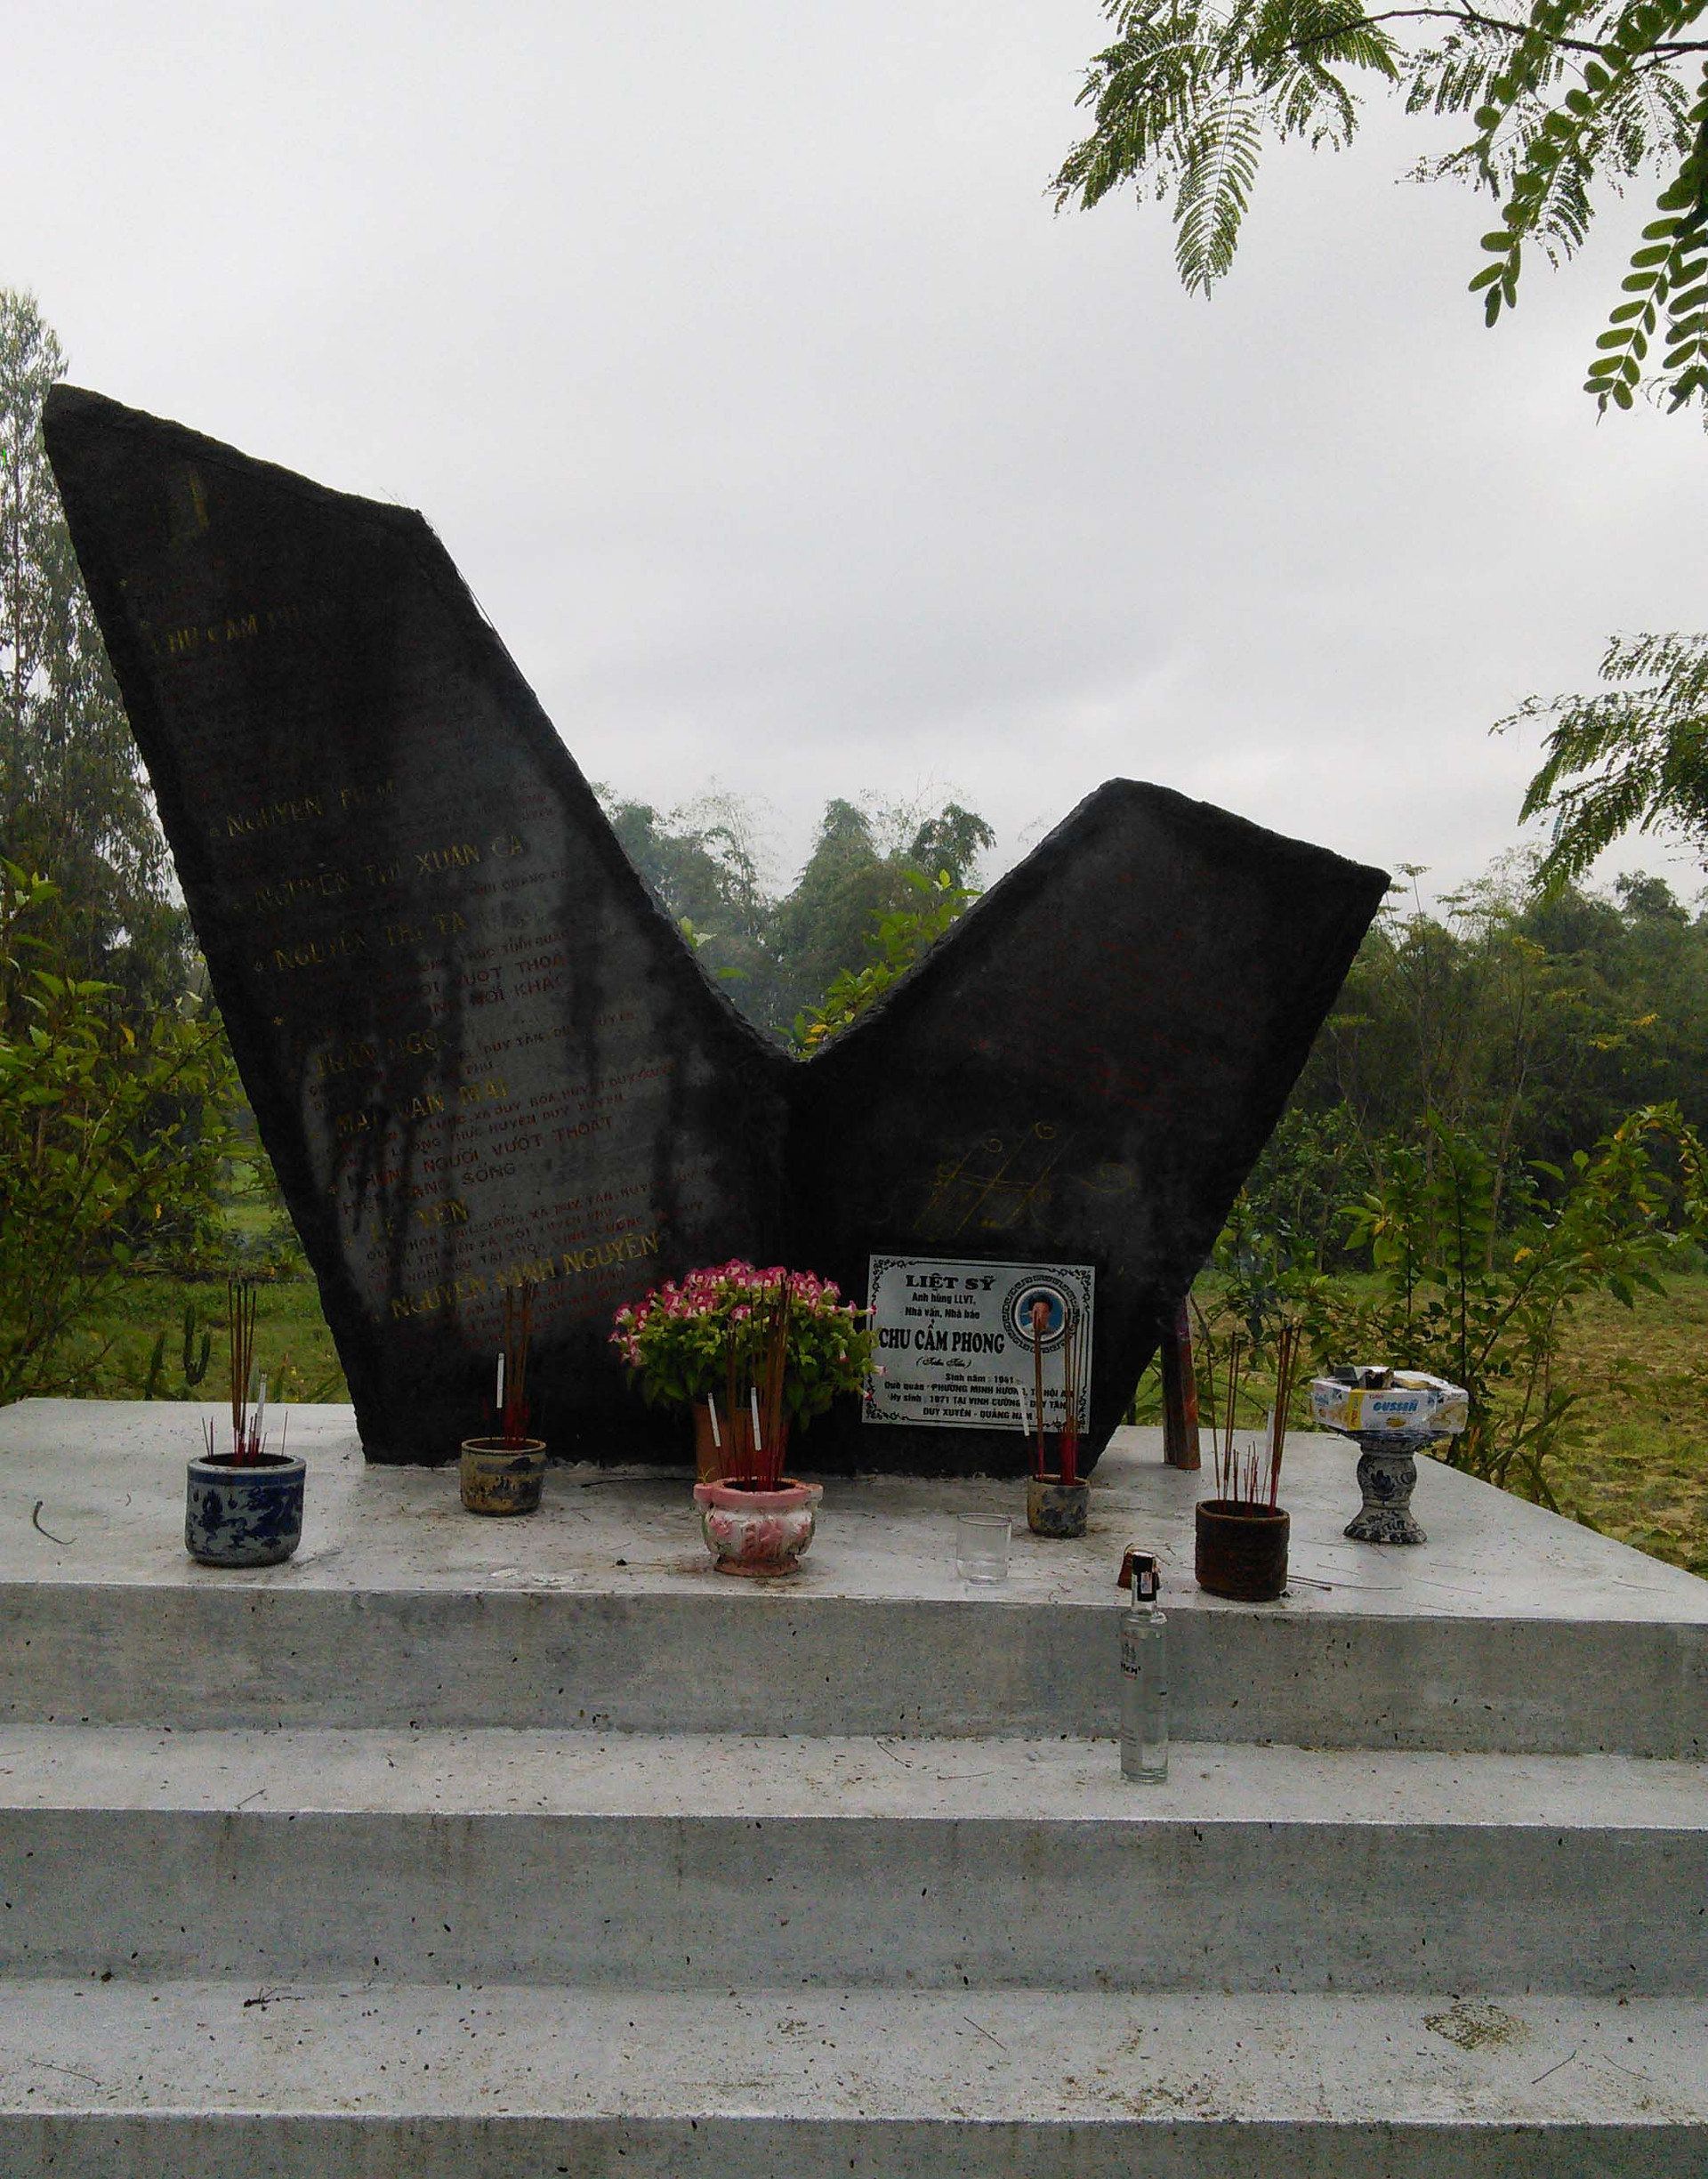 Bia tưởng niệm nhà văn - nhà báo - anh hùng LLVTND Chu Cẩm Phong ở Duy Xuyên. ảnh: B.L